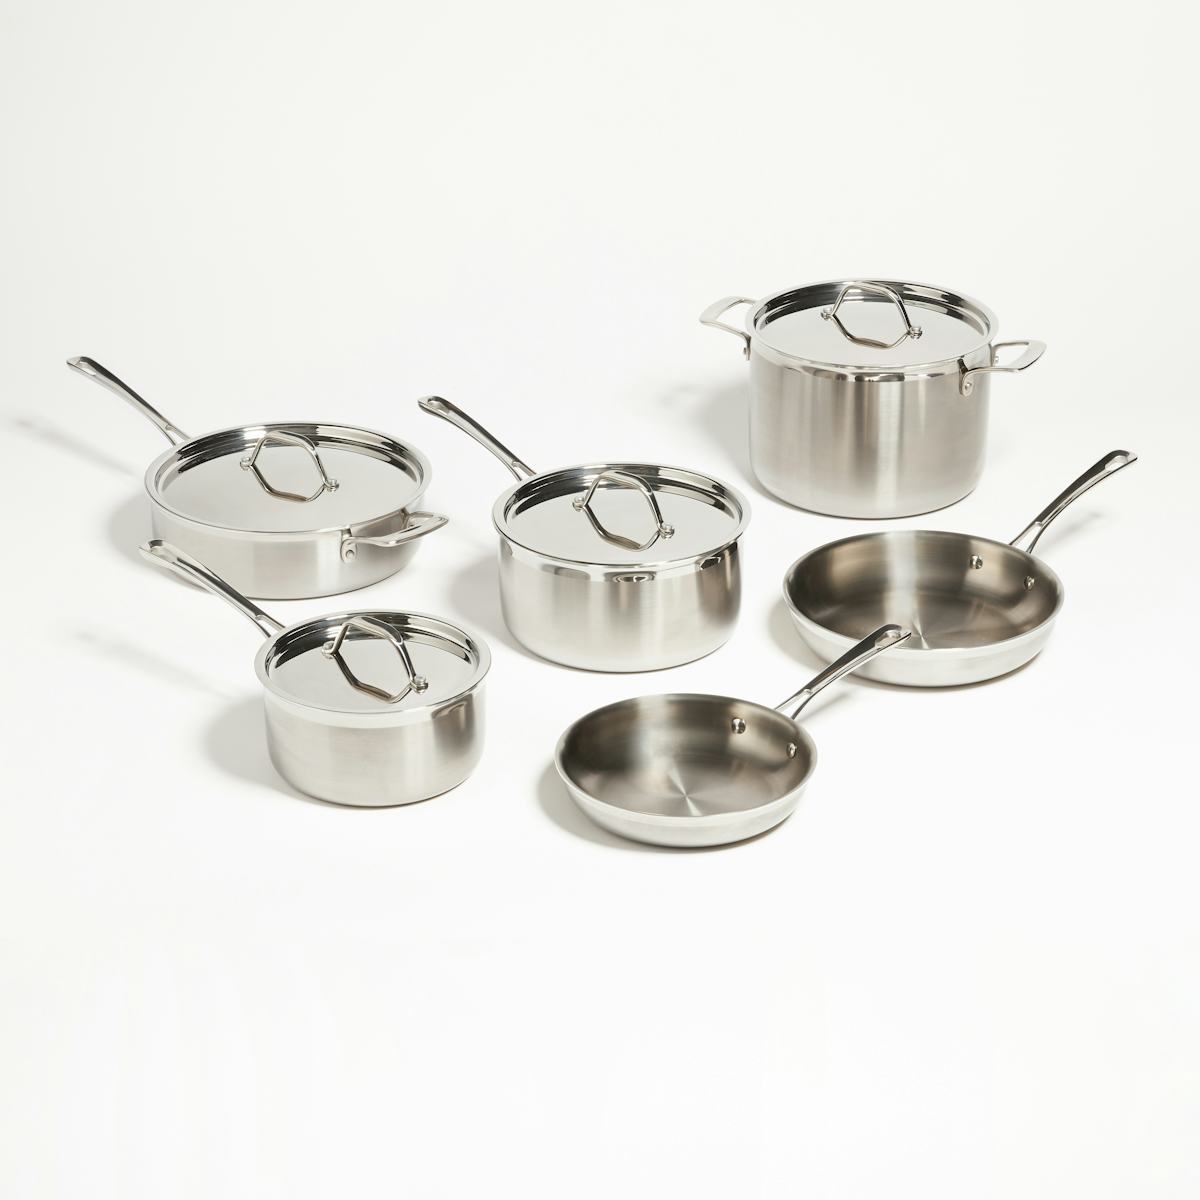 Zest 10-Piece Stainless Steel Cookware Set